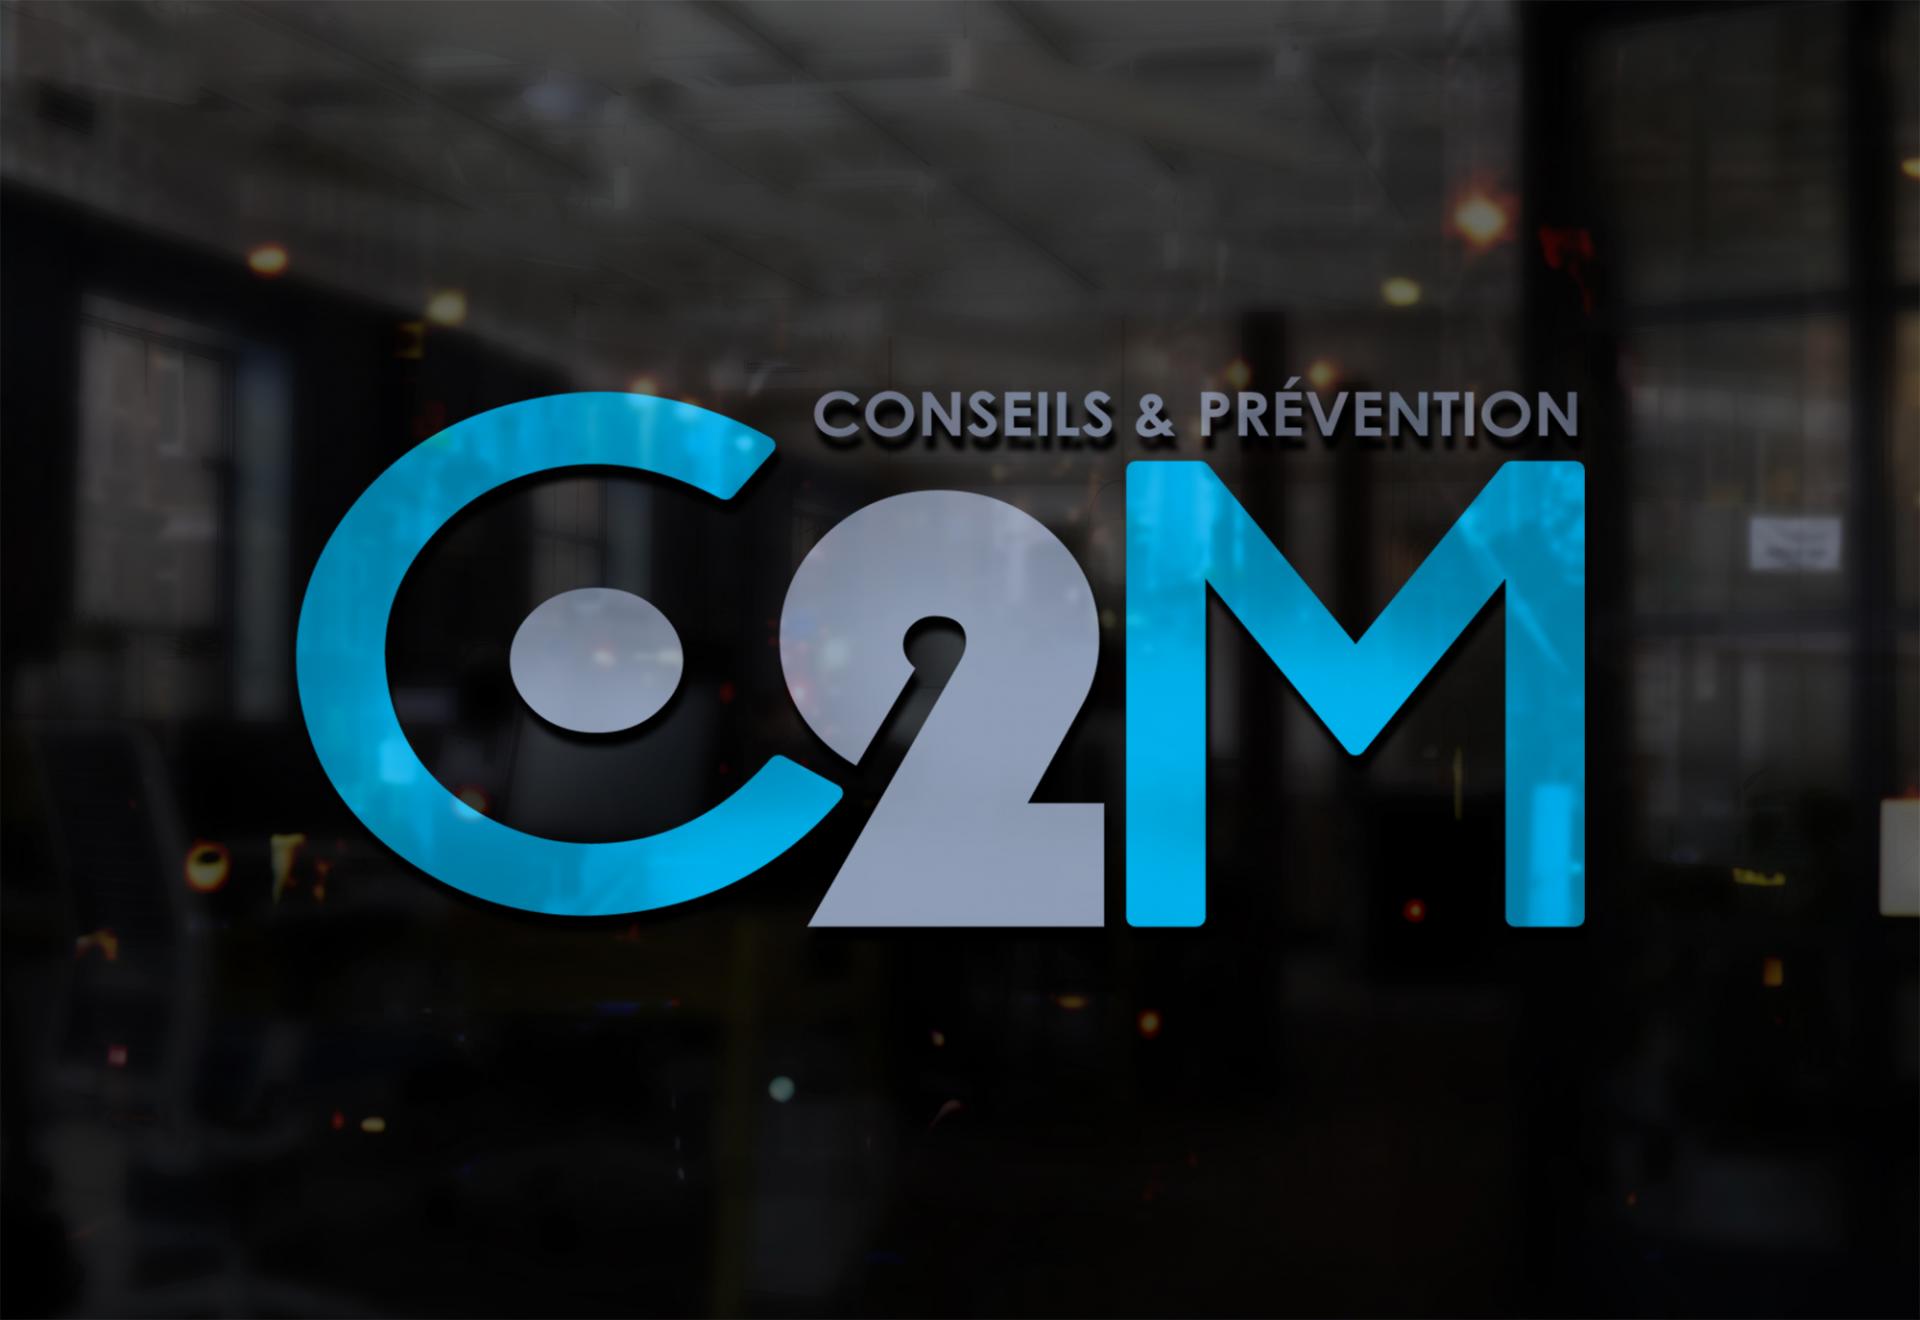 Logotype c2m consulting